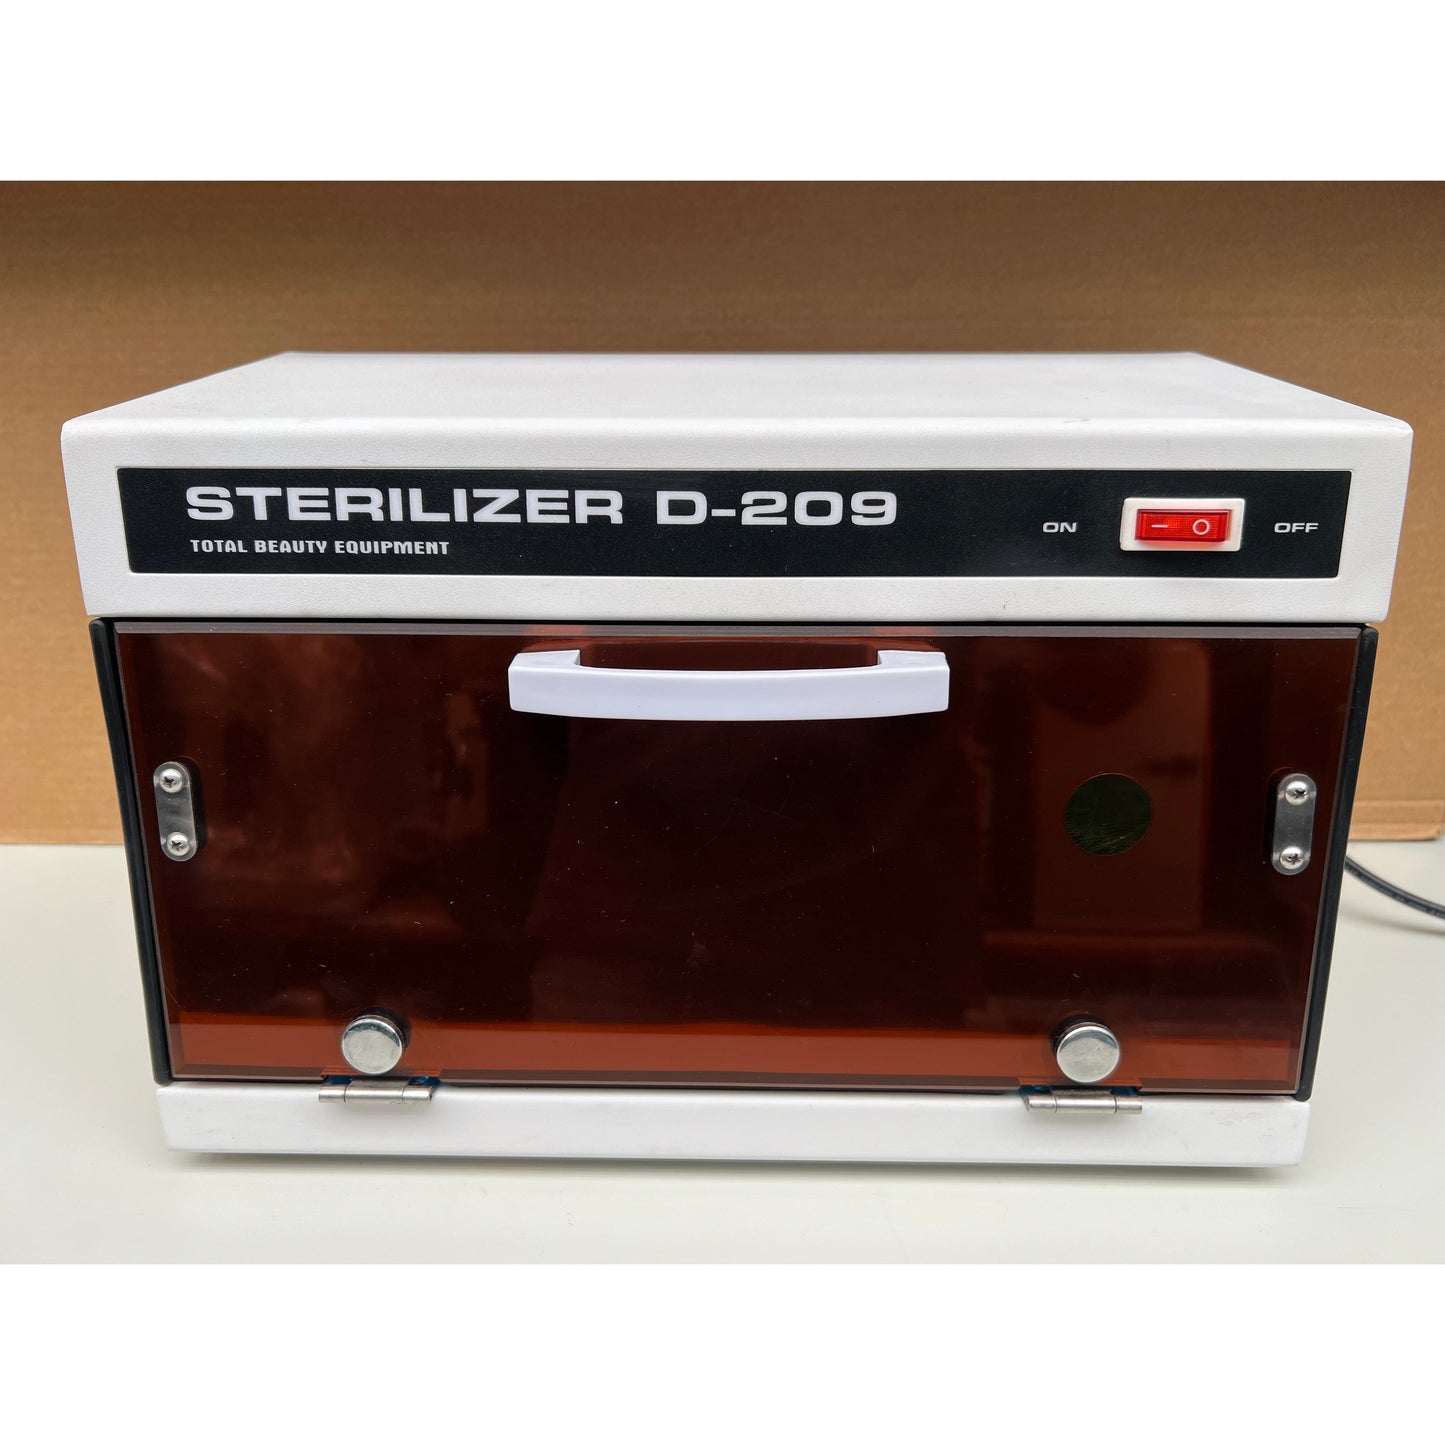 UV Sanitiser D209 Sterilizer - Preloved But like new